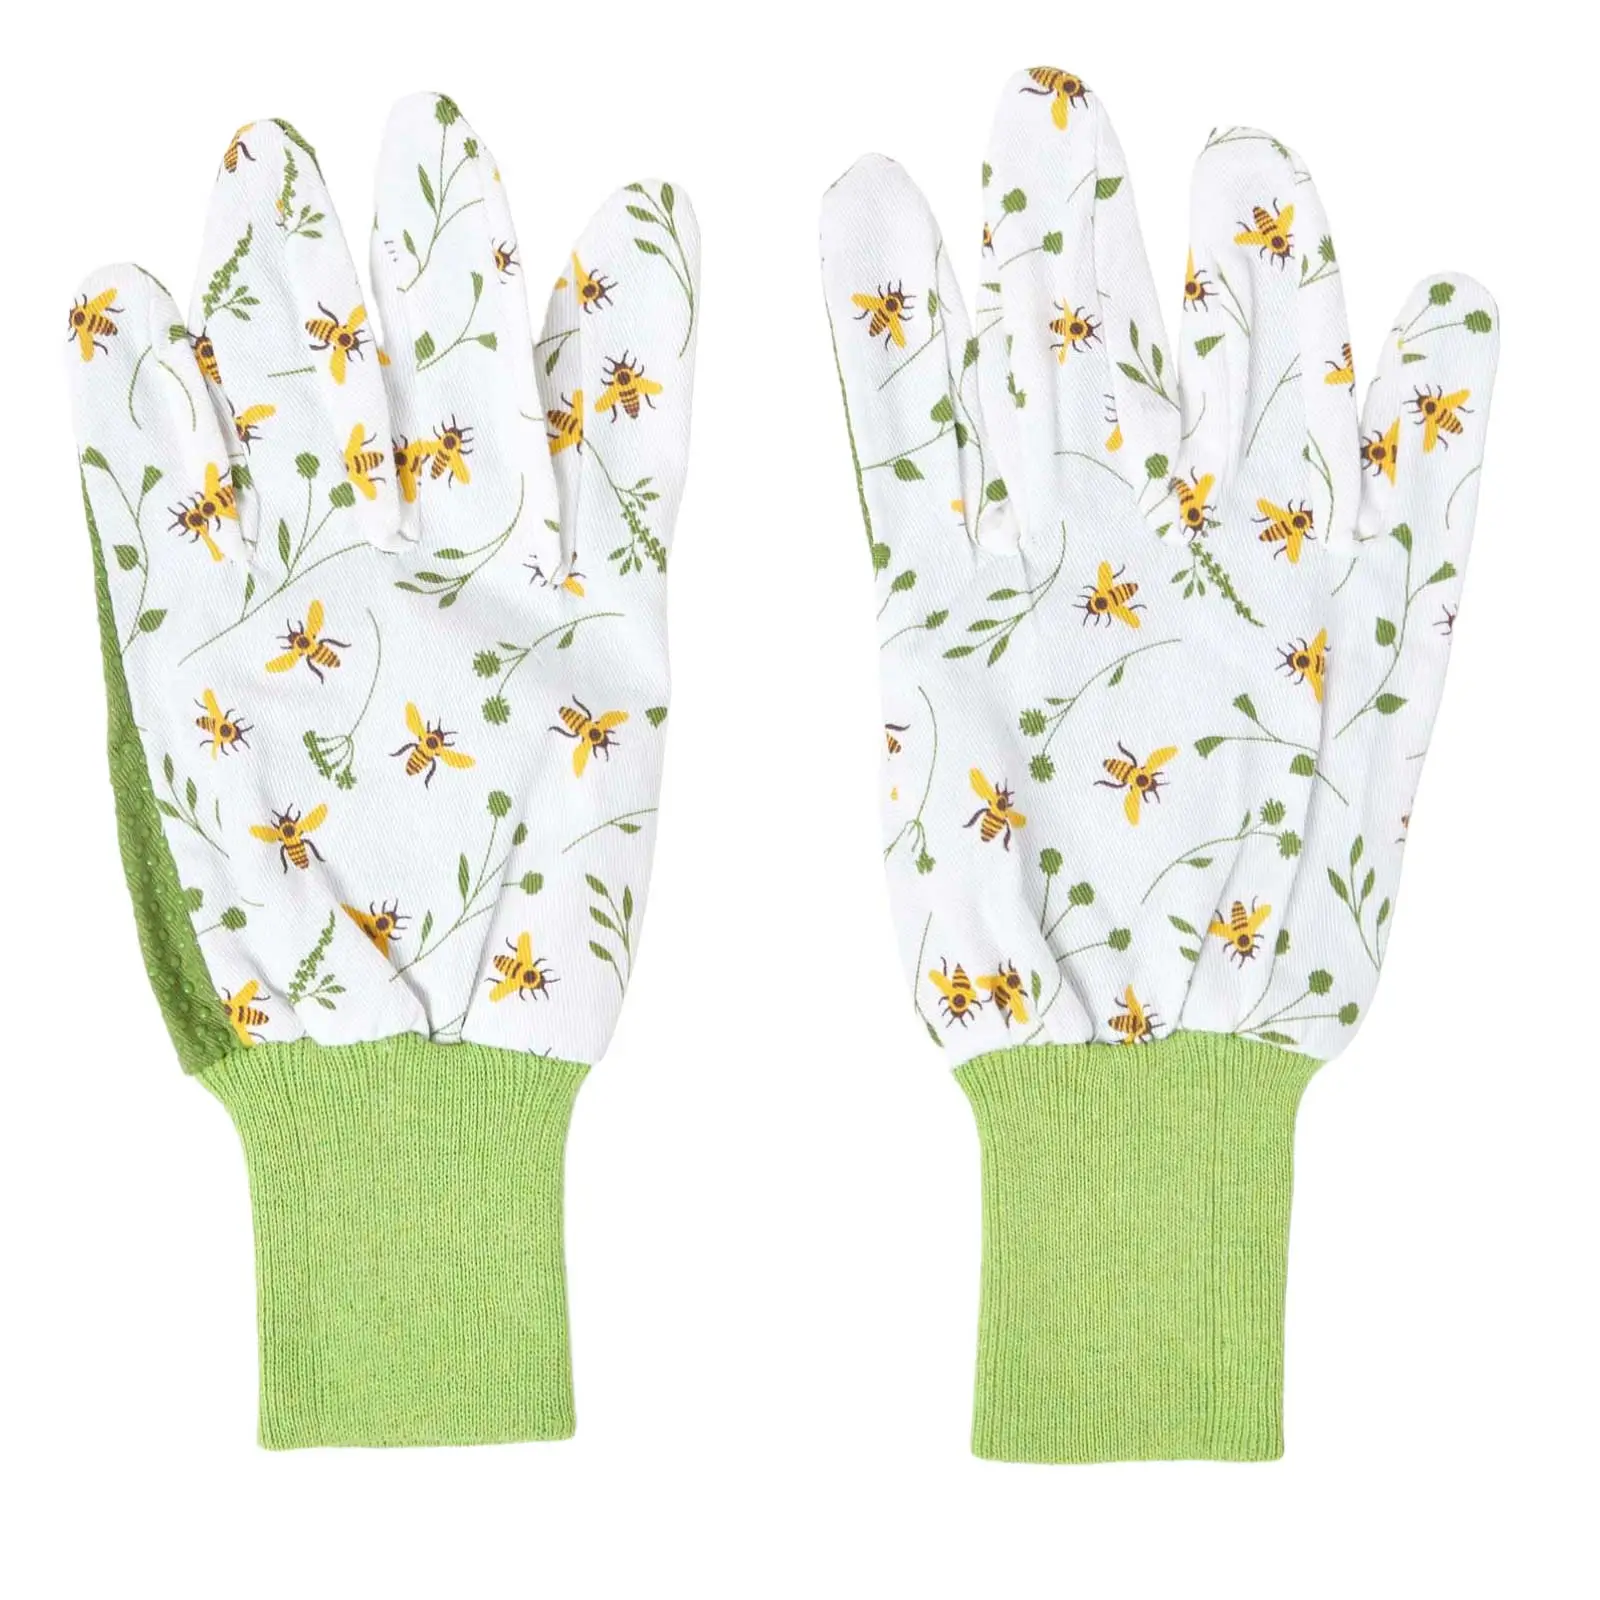 Garten-Handschuhe Gr眉n-wei脽e